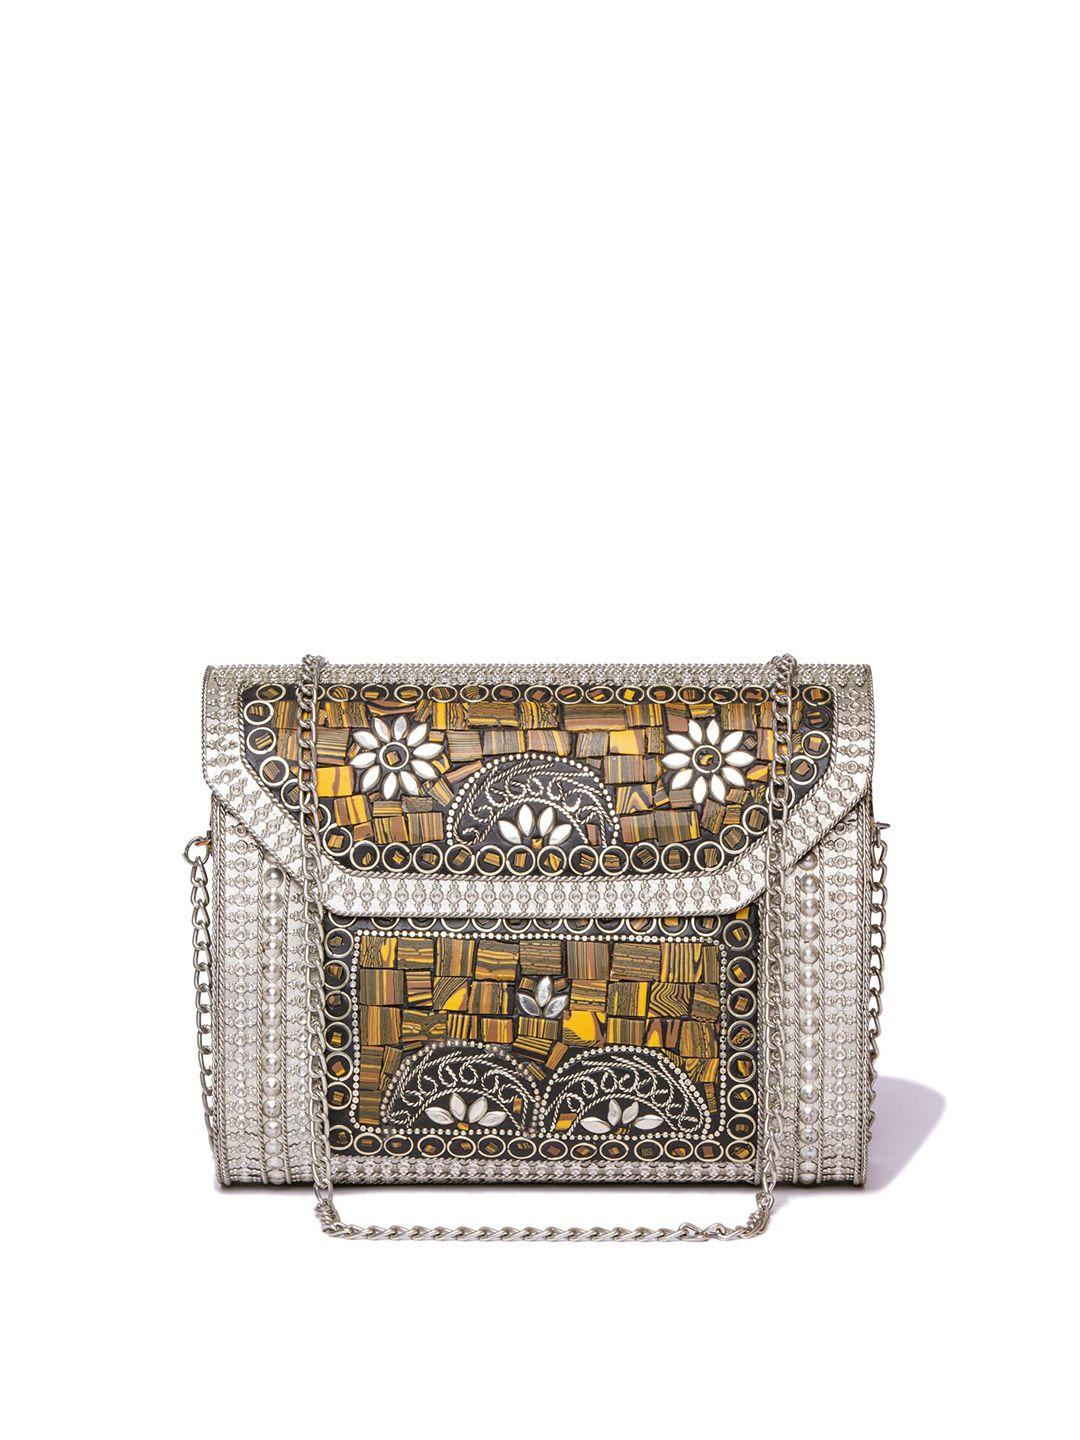 artflyck women silver-toned embellished box clutch